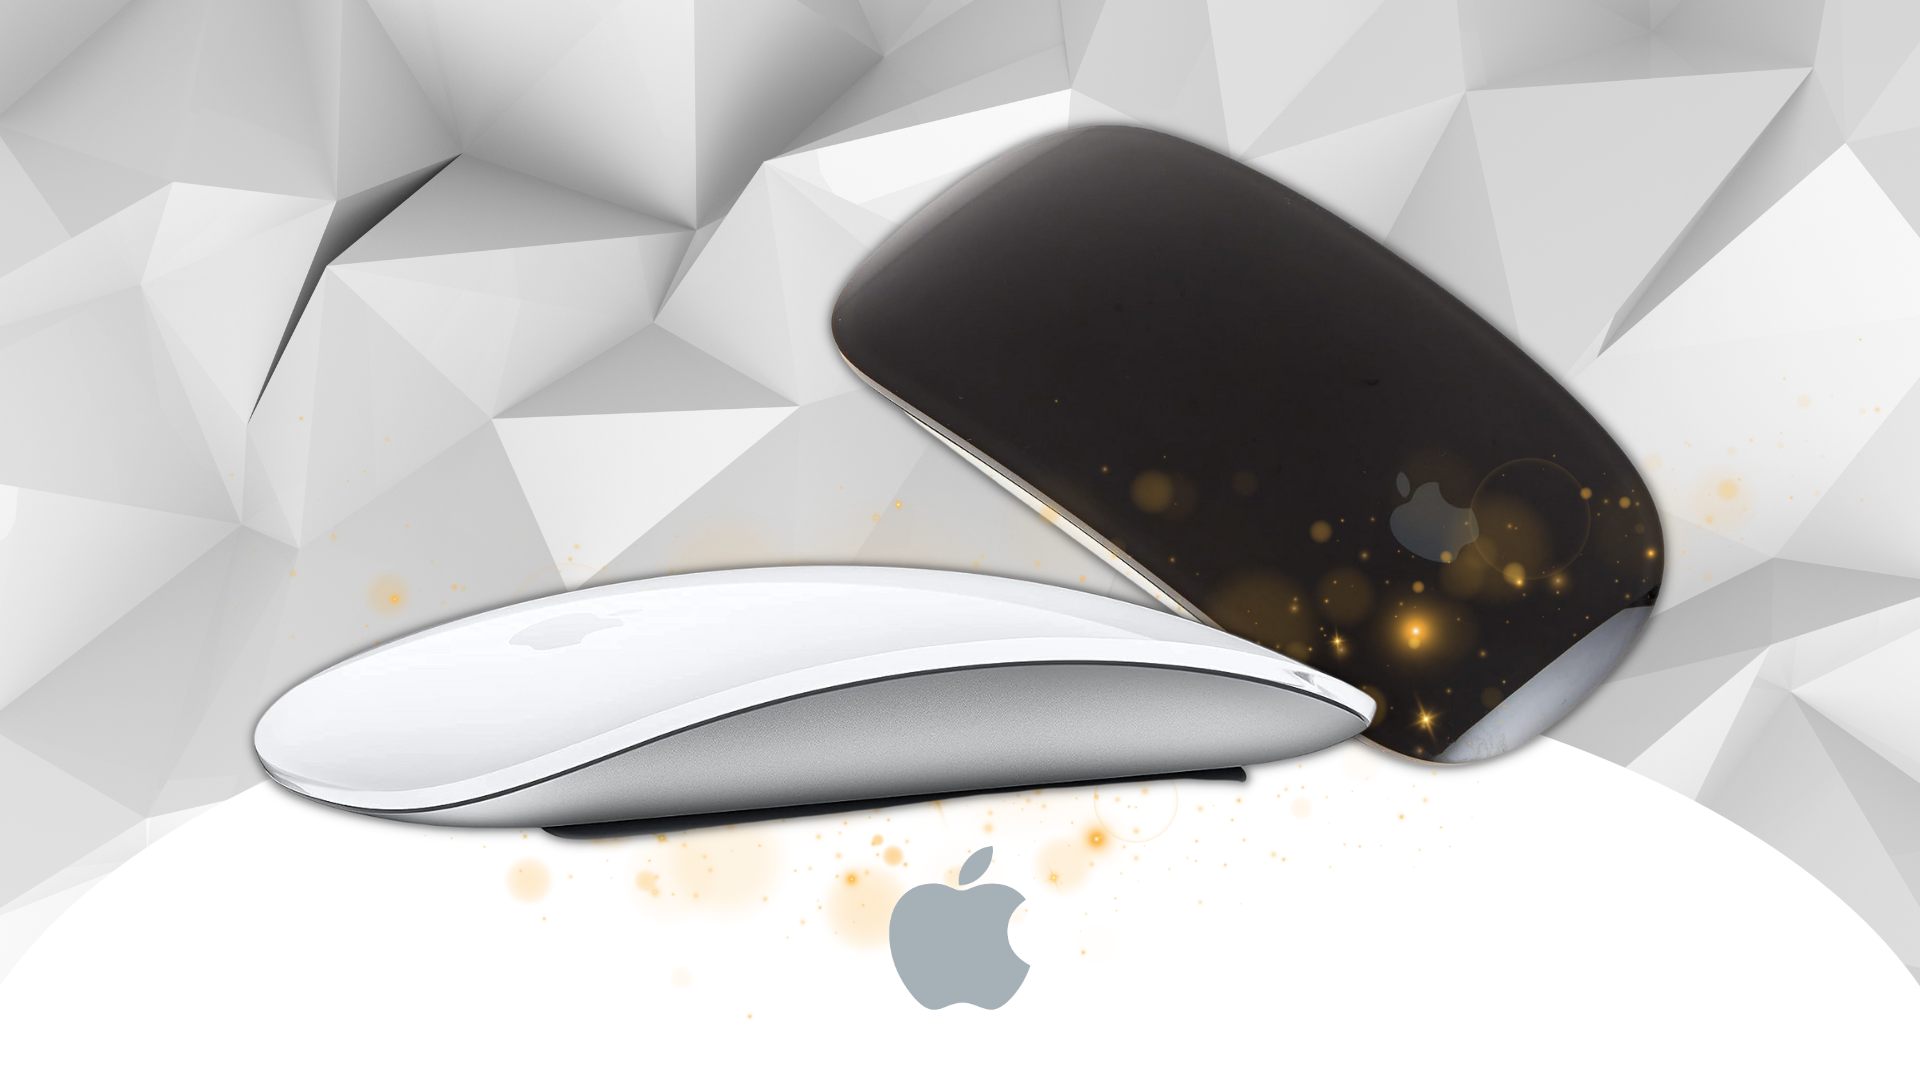 späten Apple Magic Mouse Black-Friday-Deal: Letzte Chance auf im 31